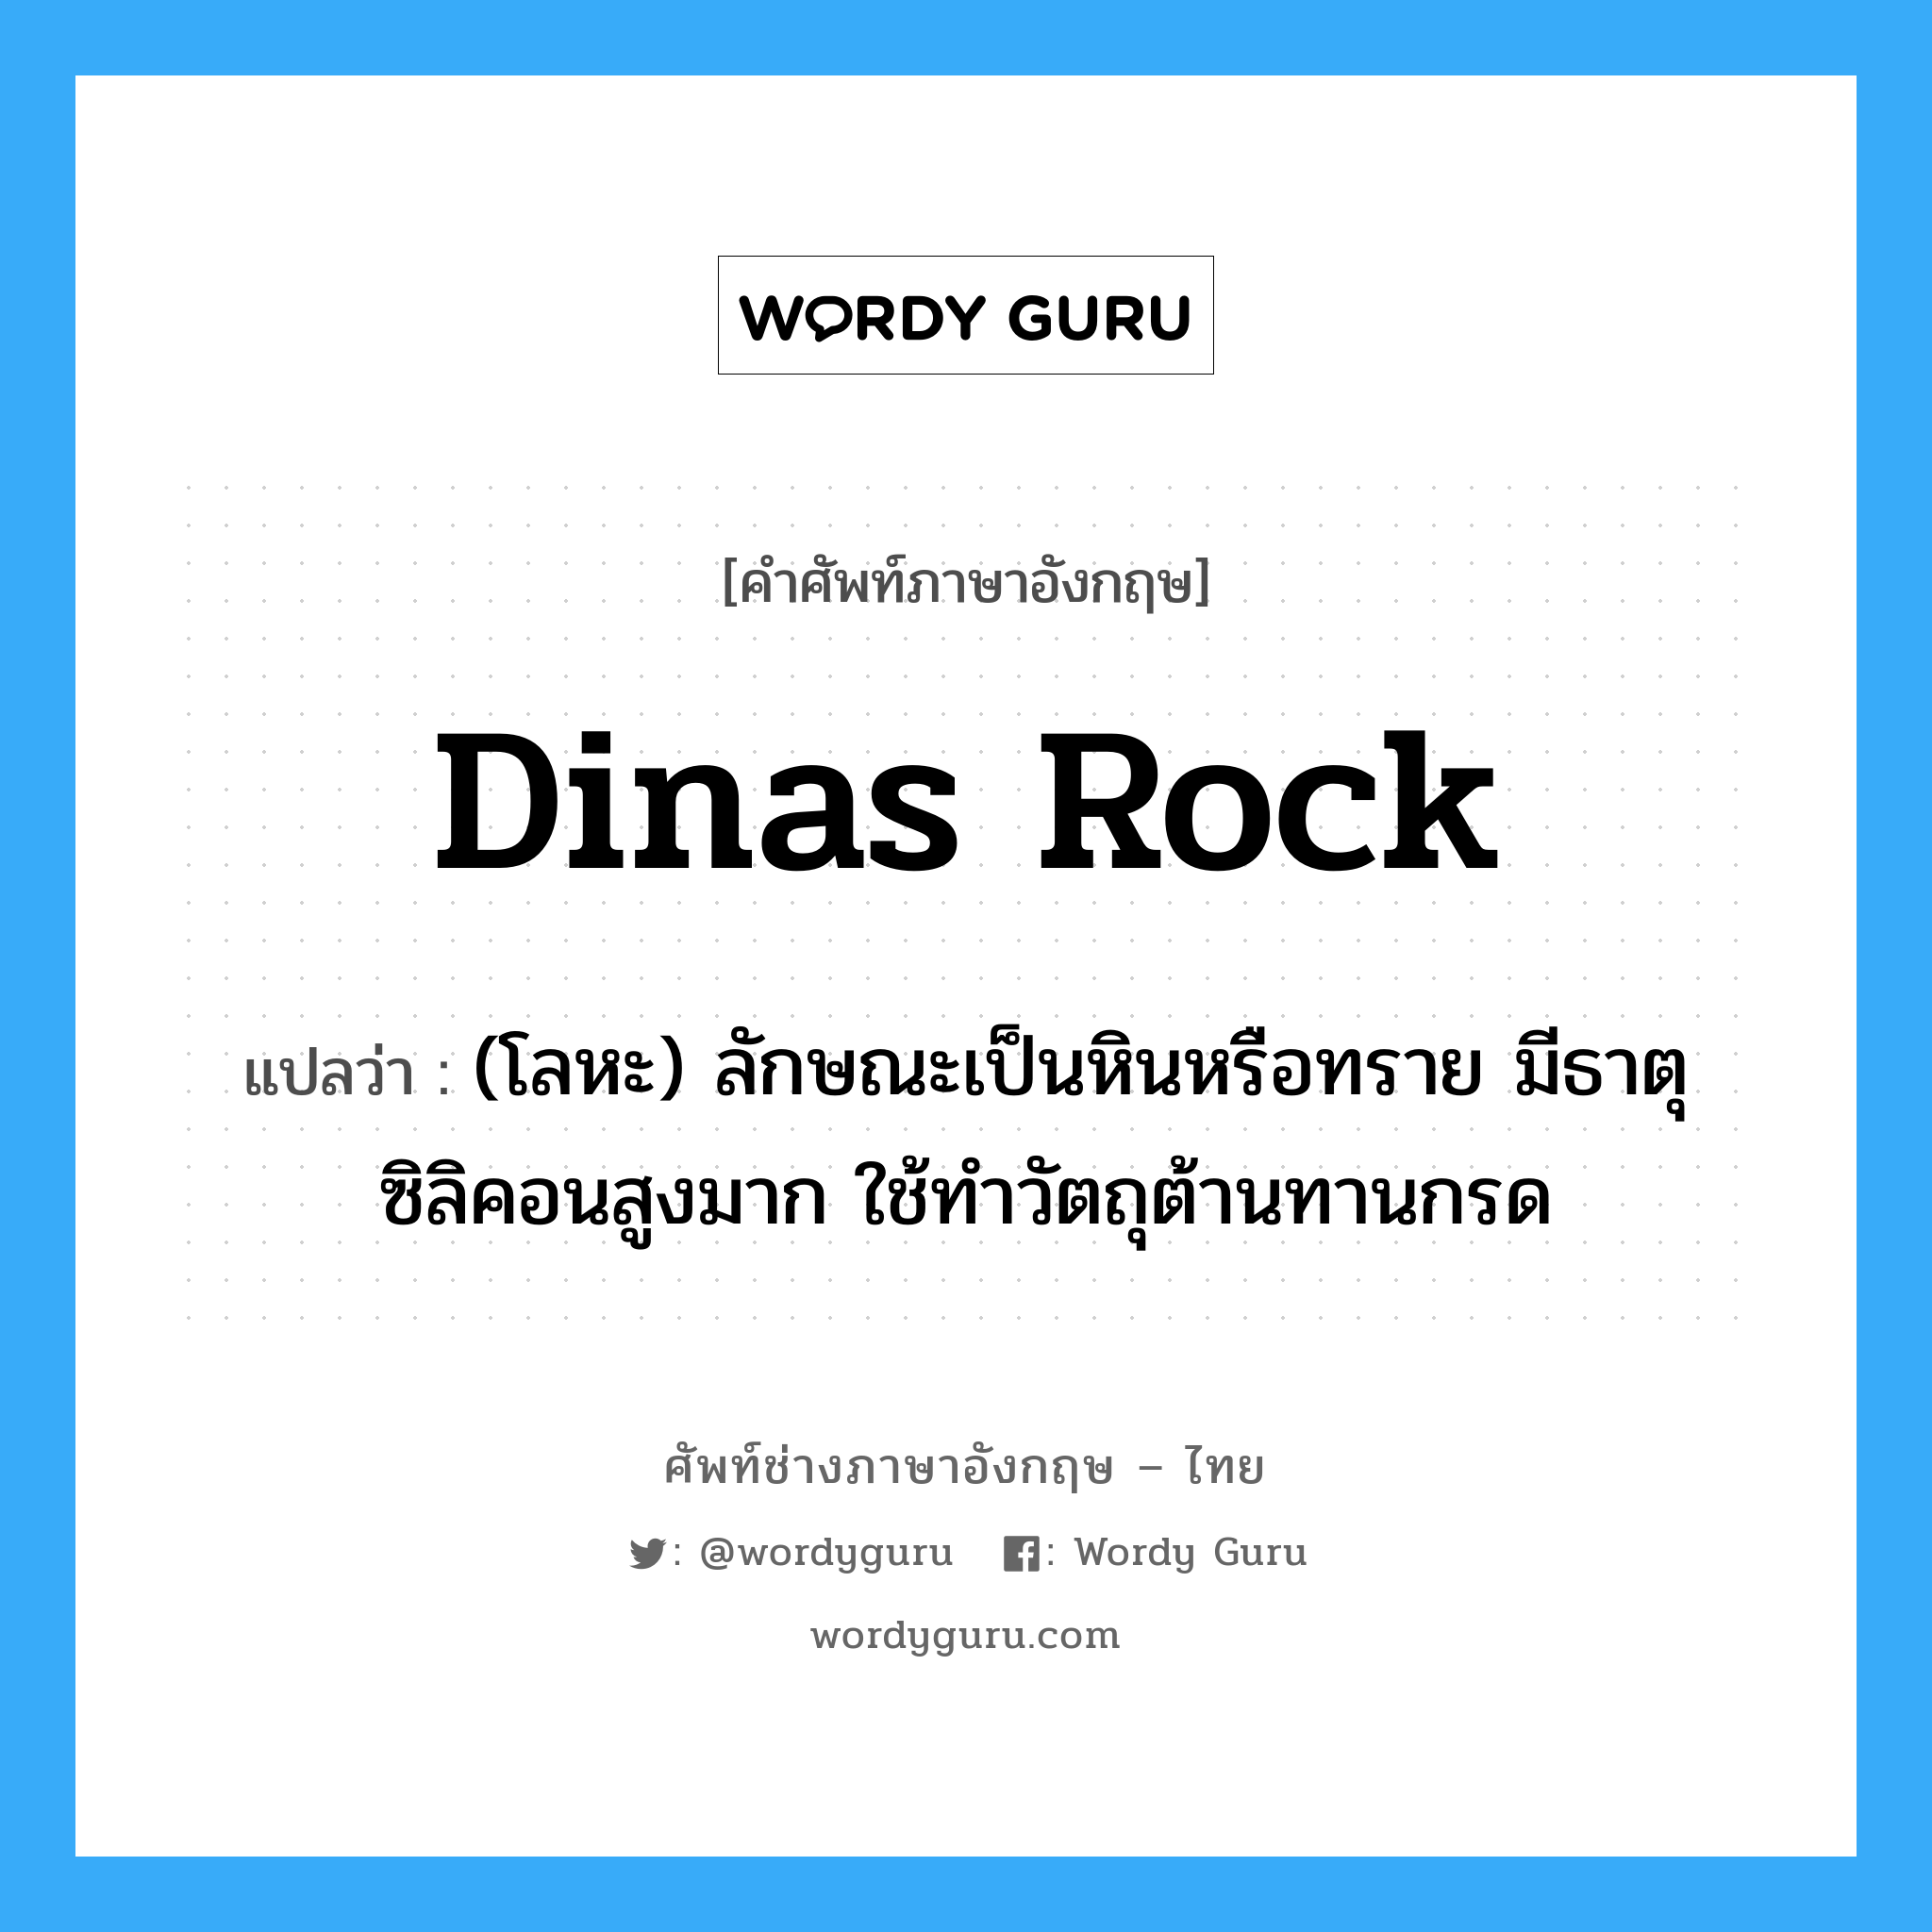 dinas rock แปลว่า?, คำศัพท์ช่างภาษาอังกฤษ - ไทย dinas rock คำศัพท์ภาษาอังกฤษ dinas rock แปลว่า (โลหะ) ลักษณะเป็นหินหรือทราย มีธาตุซิลิคอนสูงมาก ใช้ทำวัตถุต้านทานกรด